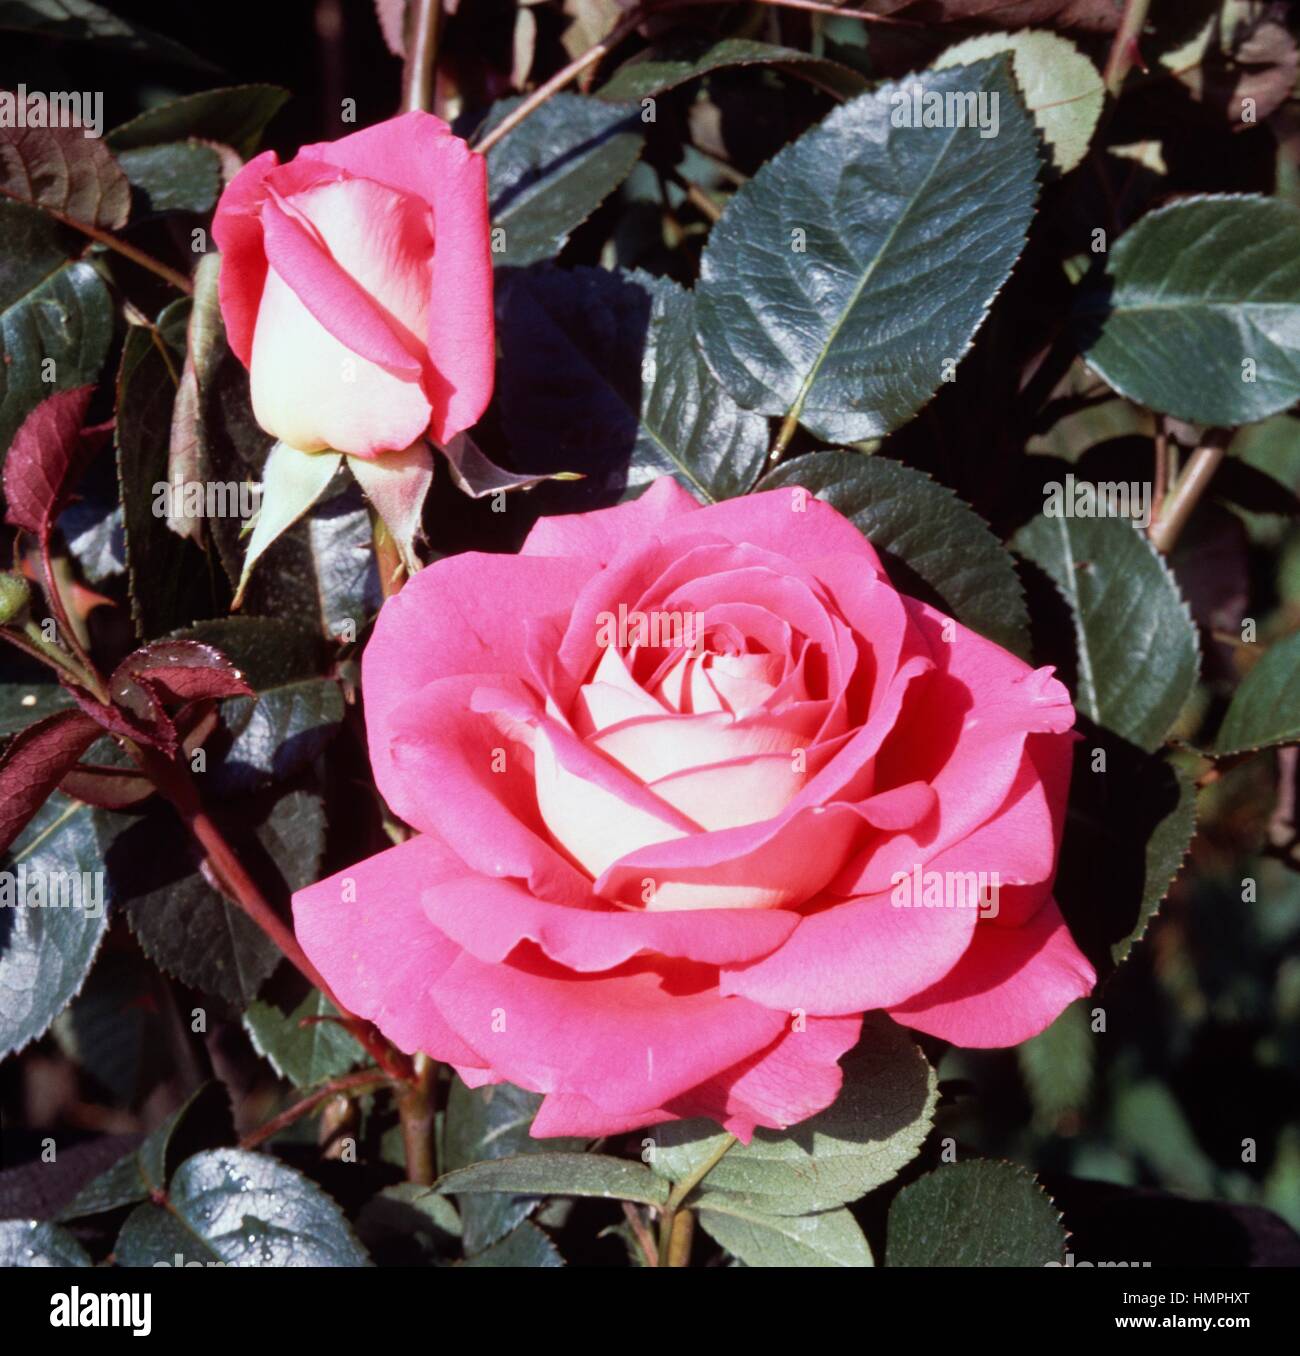 Ornella Muti rose, Rosaceae. Stock Photo